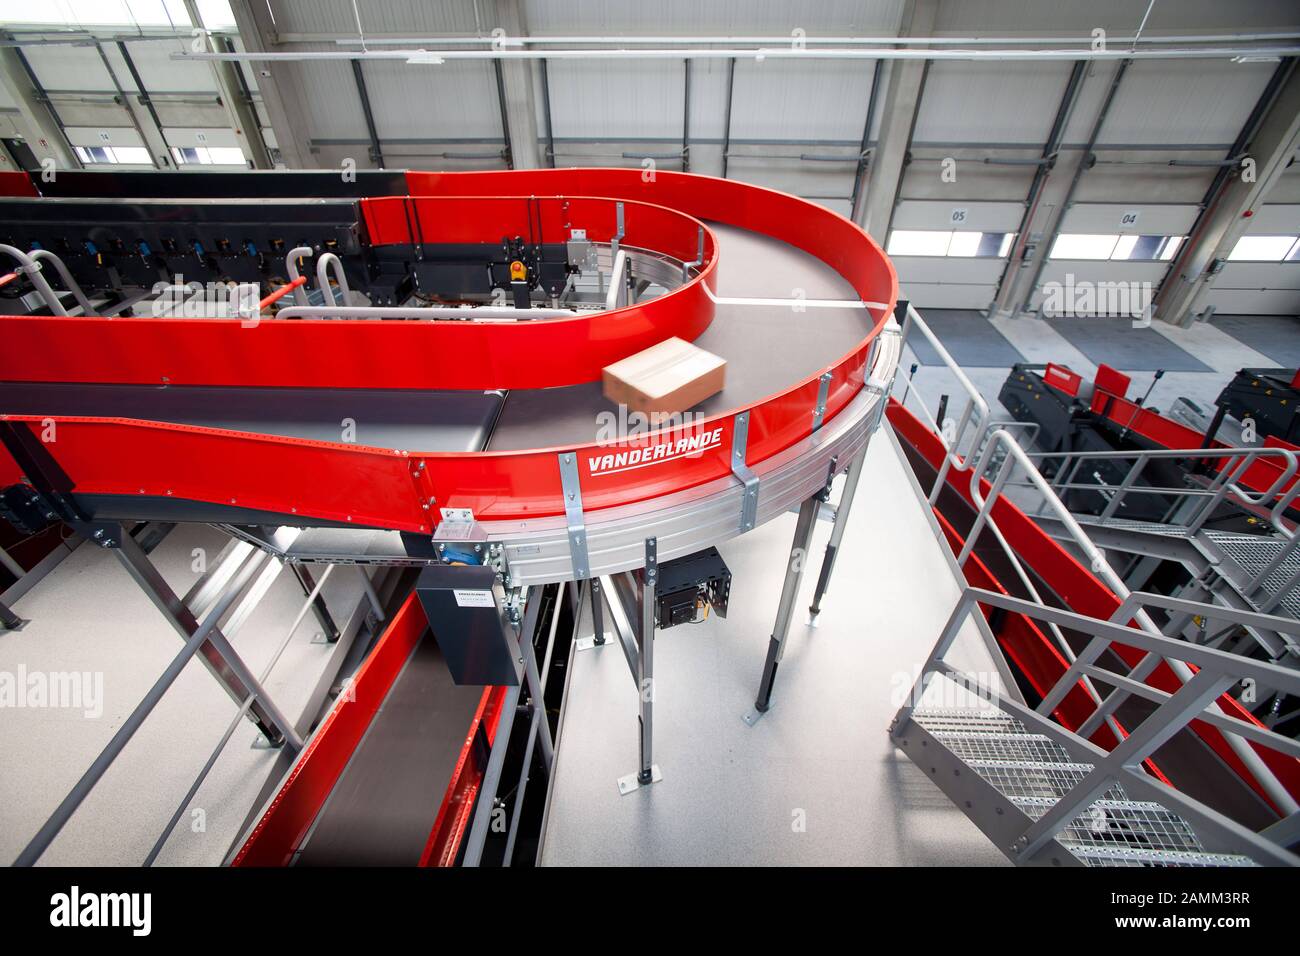 Das neue Distributionszentrum von DHL in München-Neuhausen. Hier ist die Montagelinie für die Pakete. [Automatisierte Übersetzung] Stockfoto